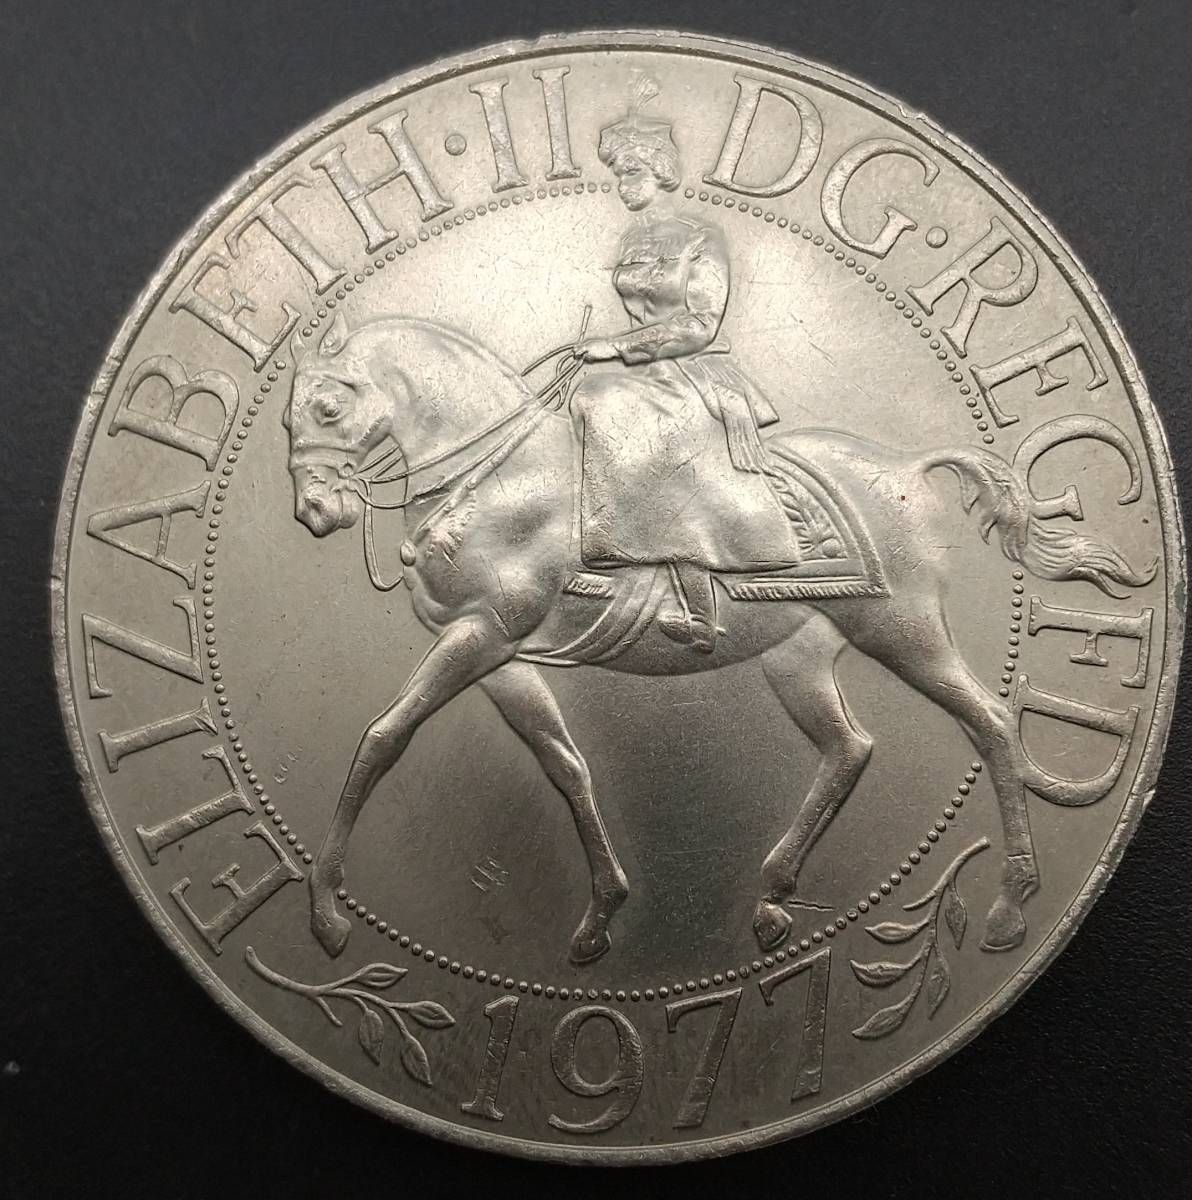 馬上のエリザベス女王(エリザベス2世)の即位 25周年記念白銅硬貨 - その他